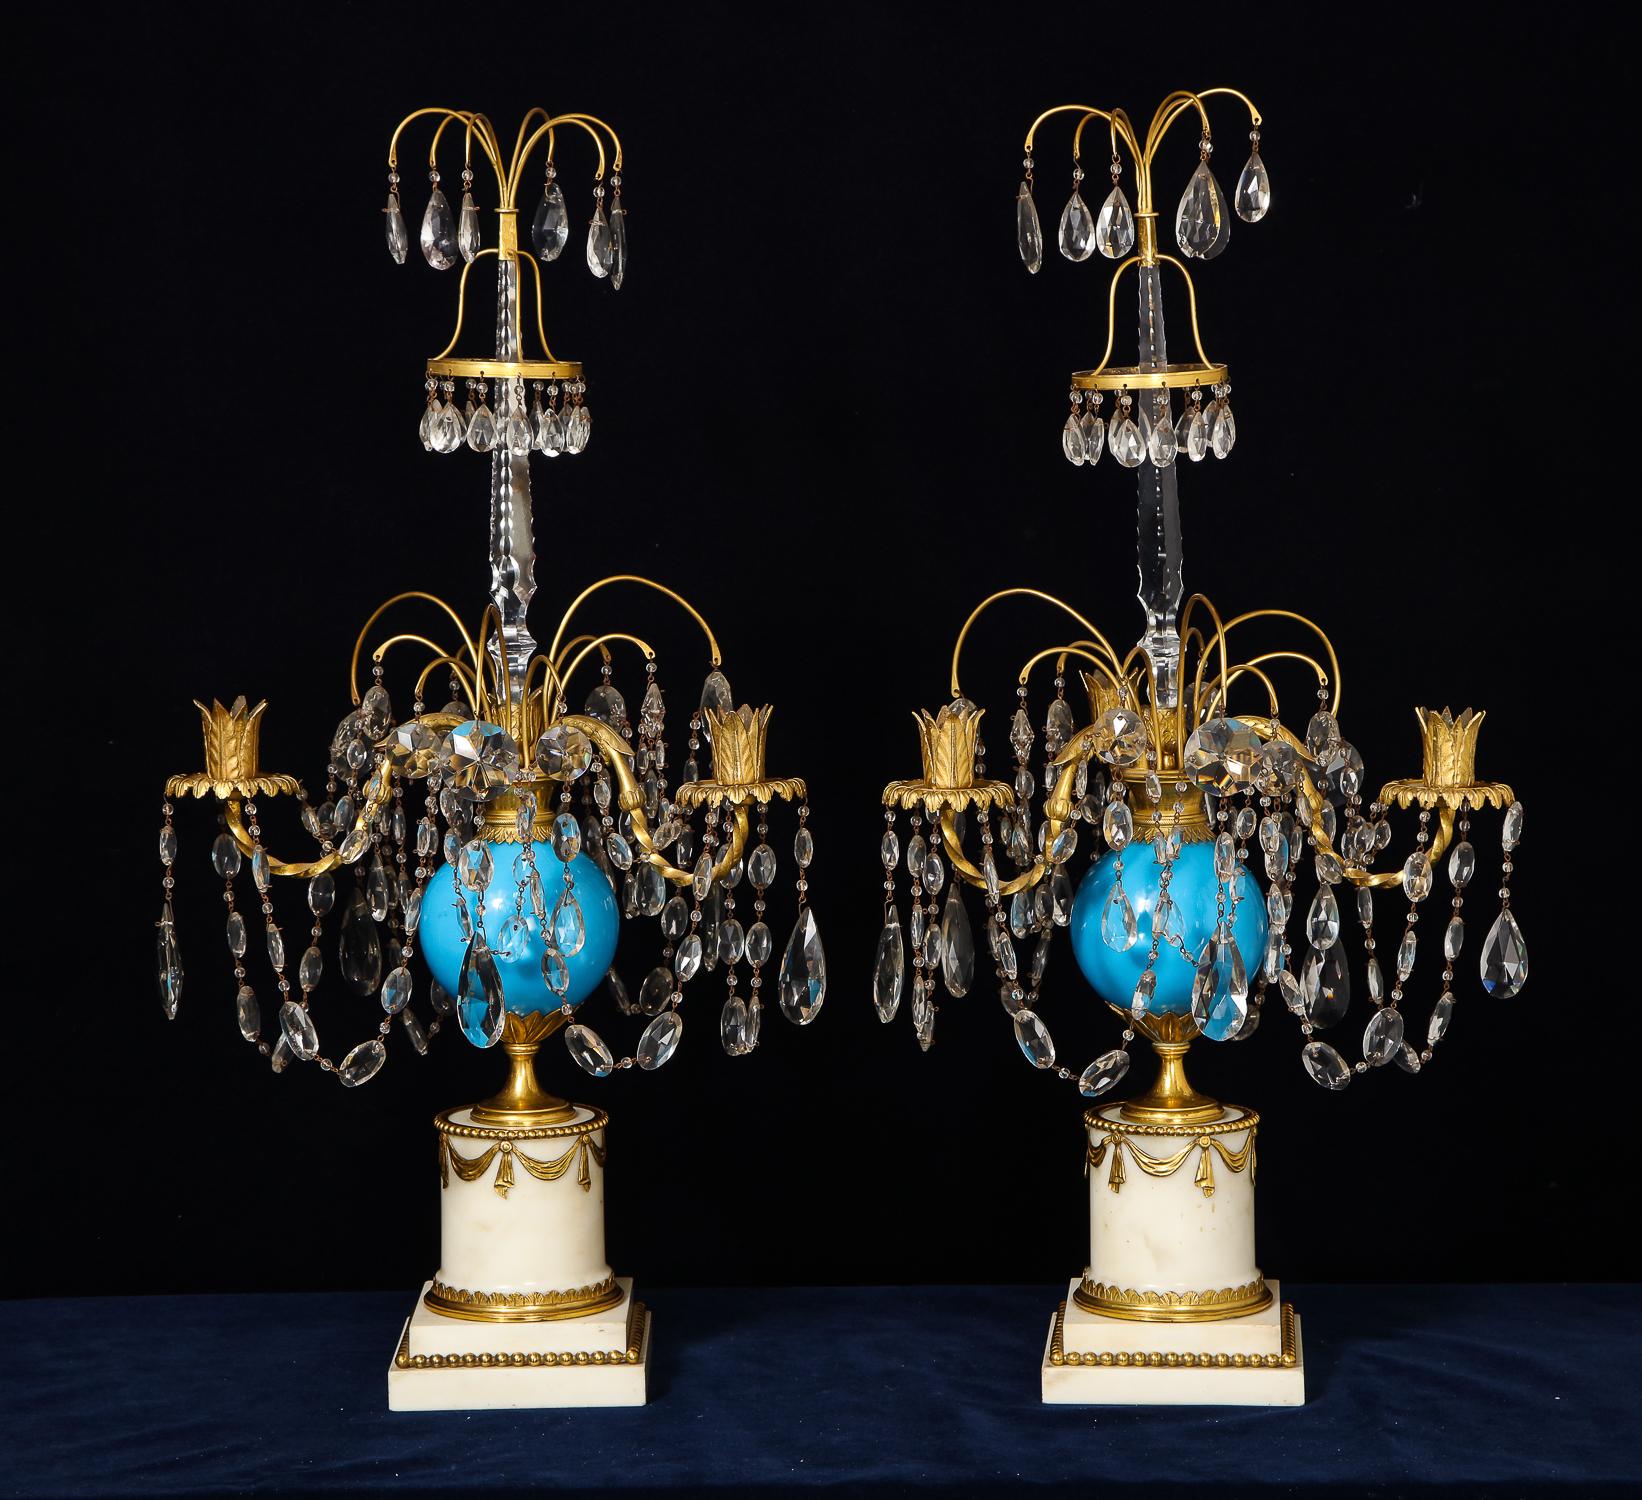 Ein Paar exquisite und sehr wichtige große antike russische neoklassizistische Kandelaber aus vergoldeter Bronze, blauem Opalglas, geschliffenem Kristall und weißem Marmor von hervorragender Qualität, verziert mit blauem Opalglas, geschliffenen